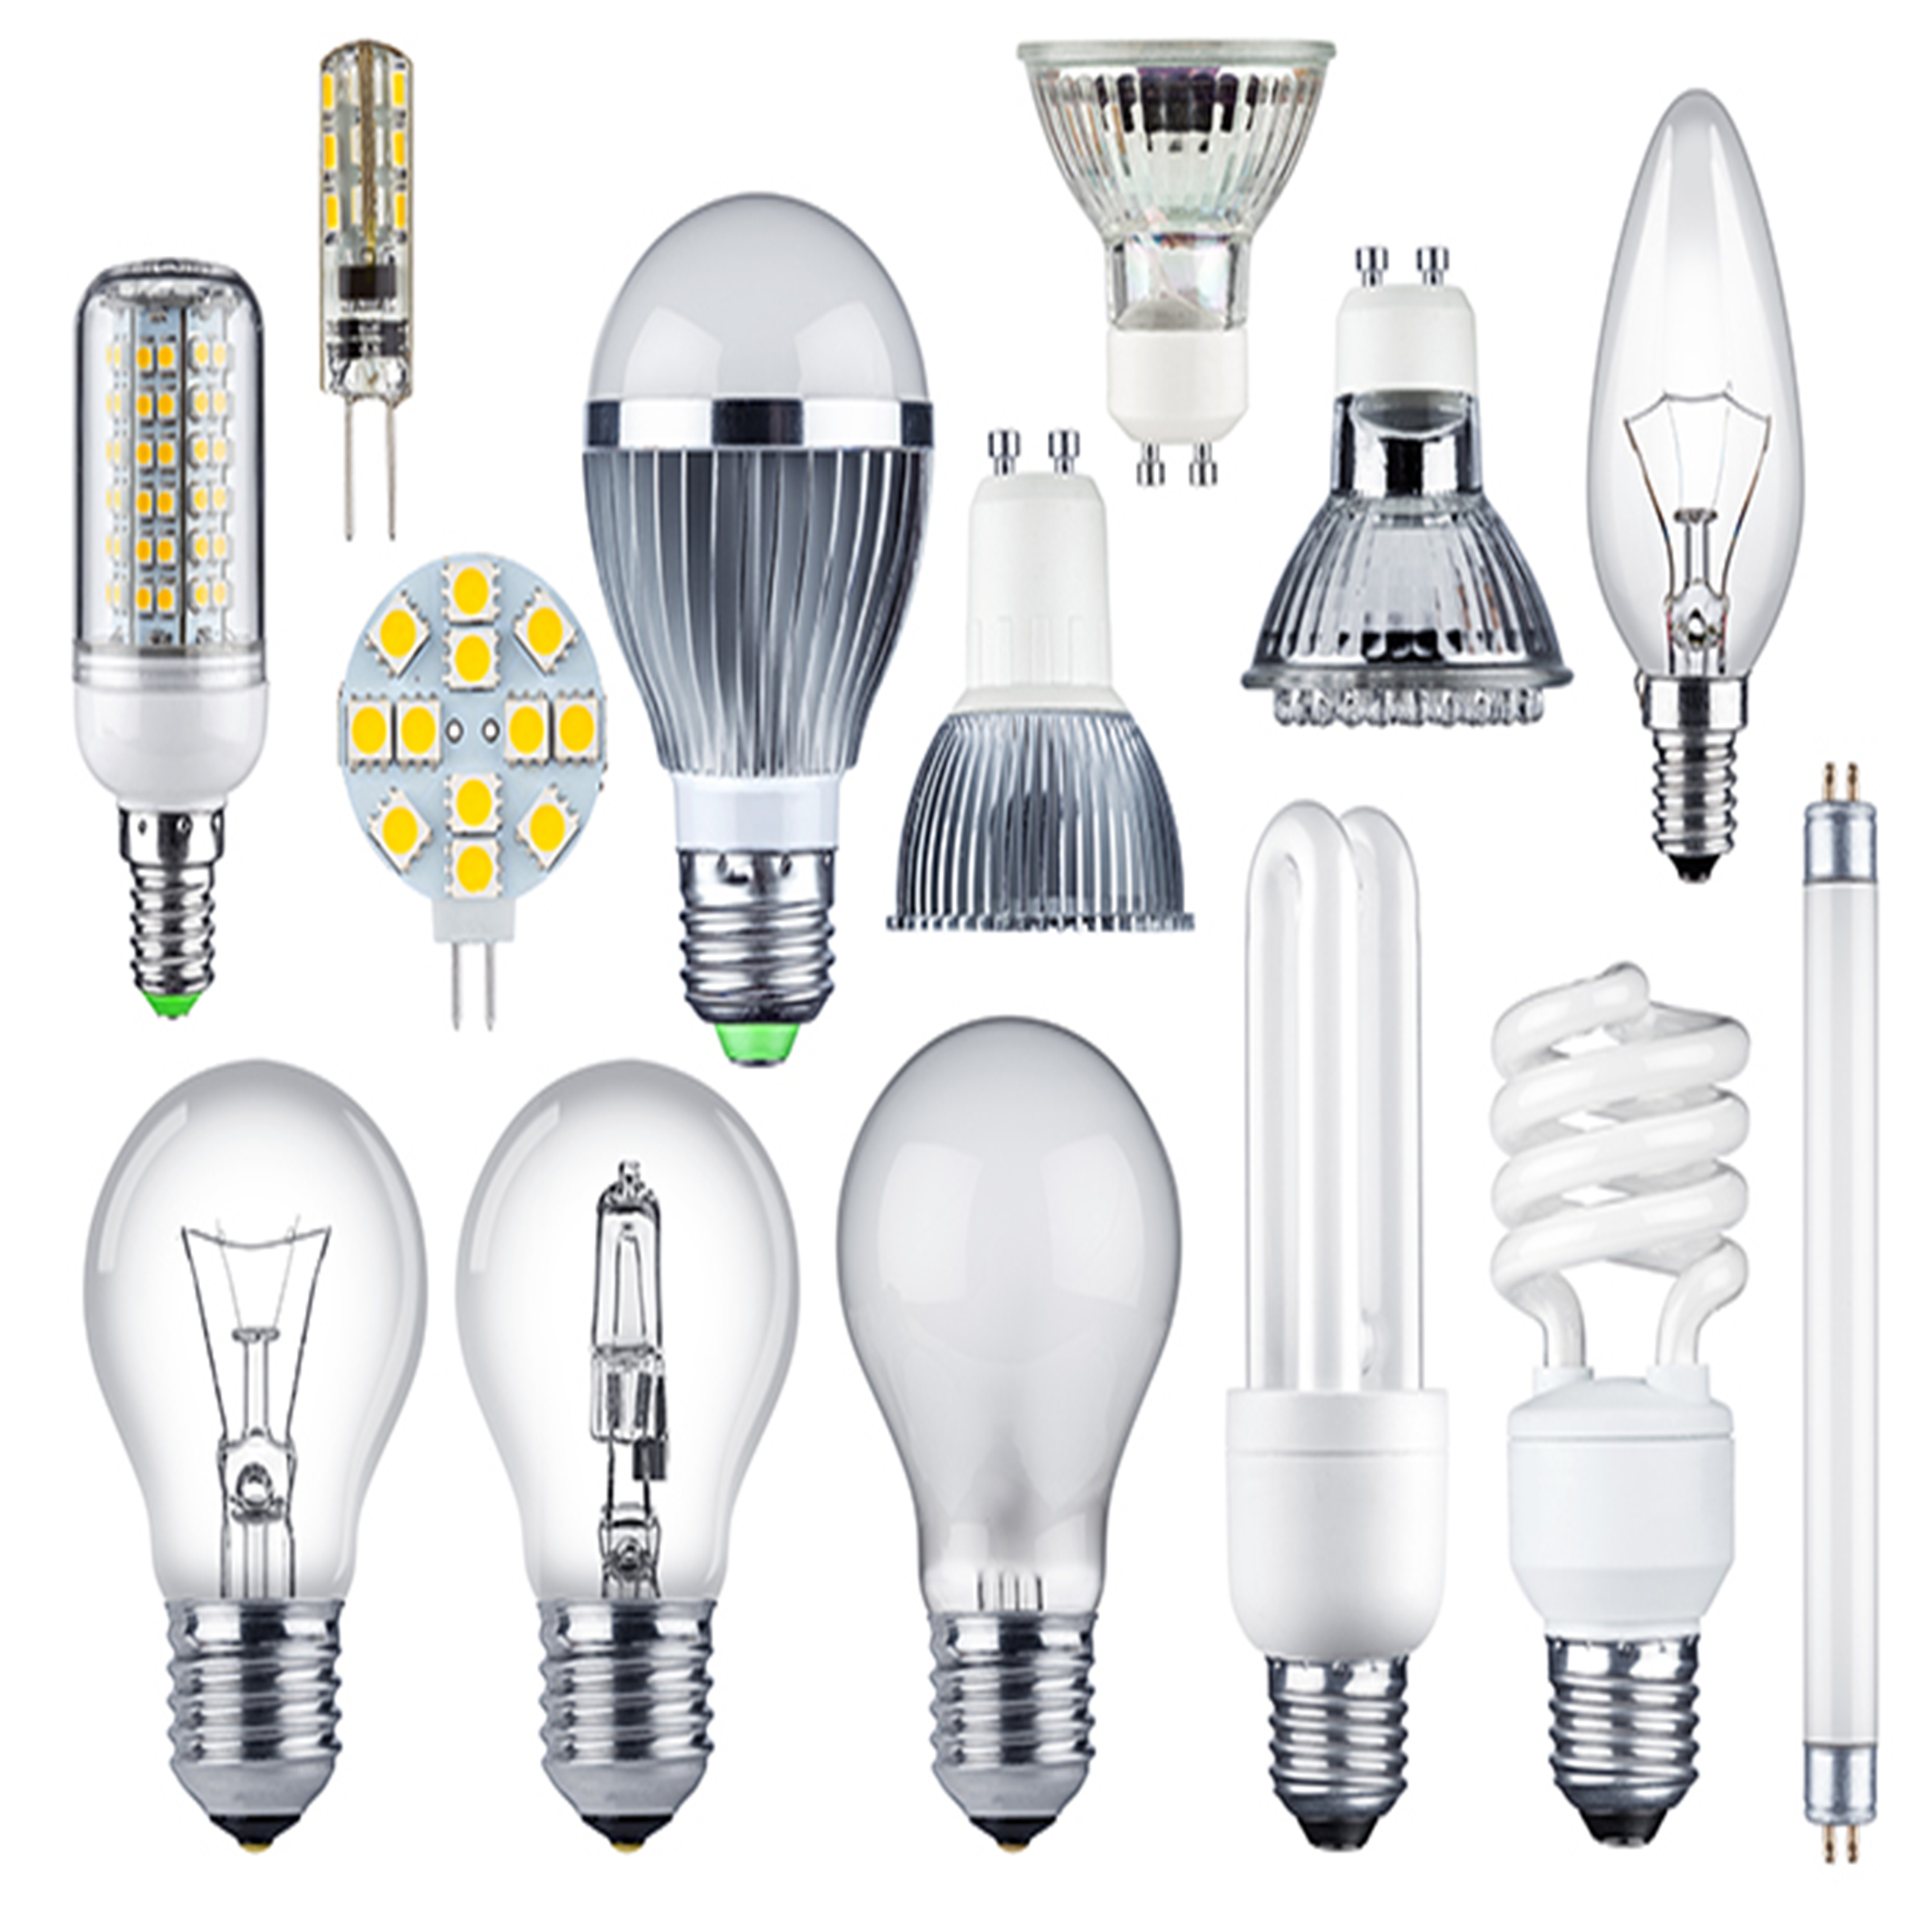 انواع لامپ های پر کاربرد